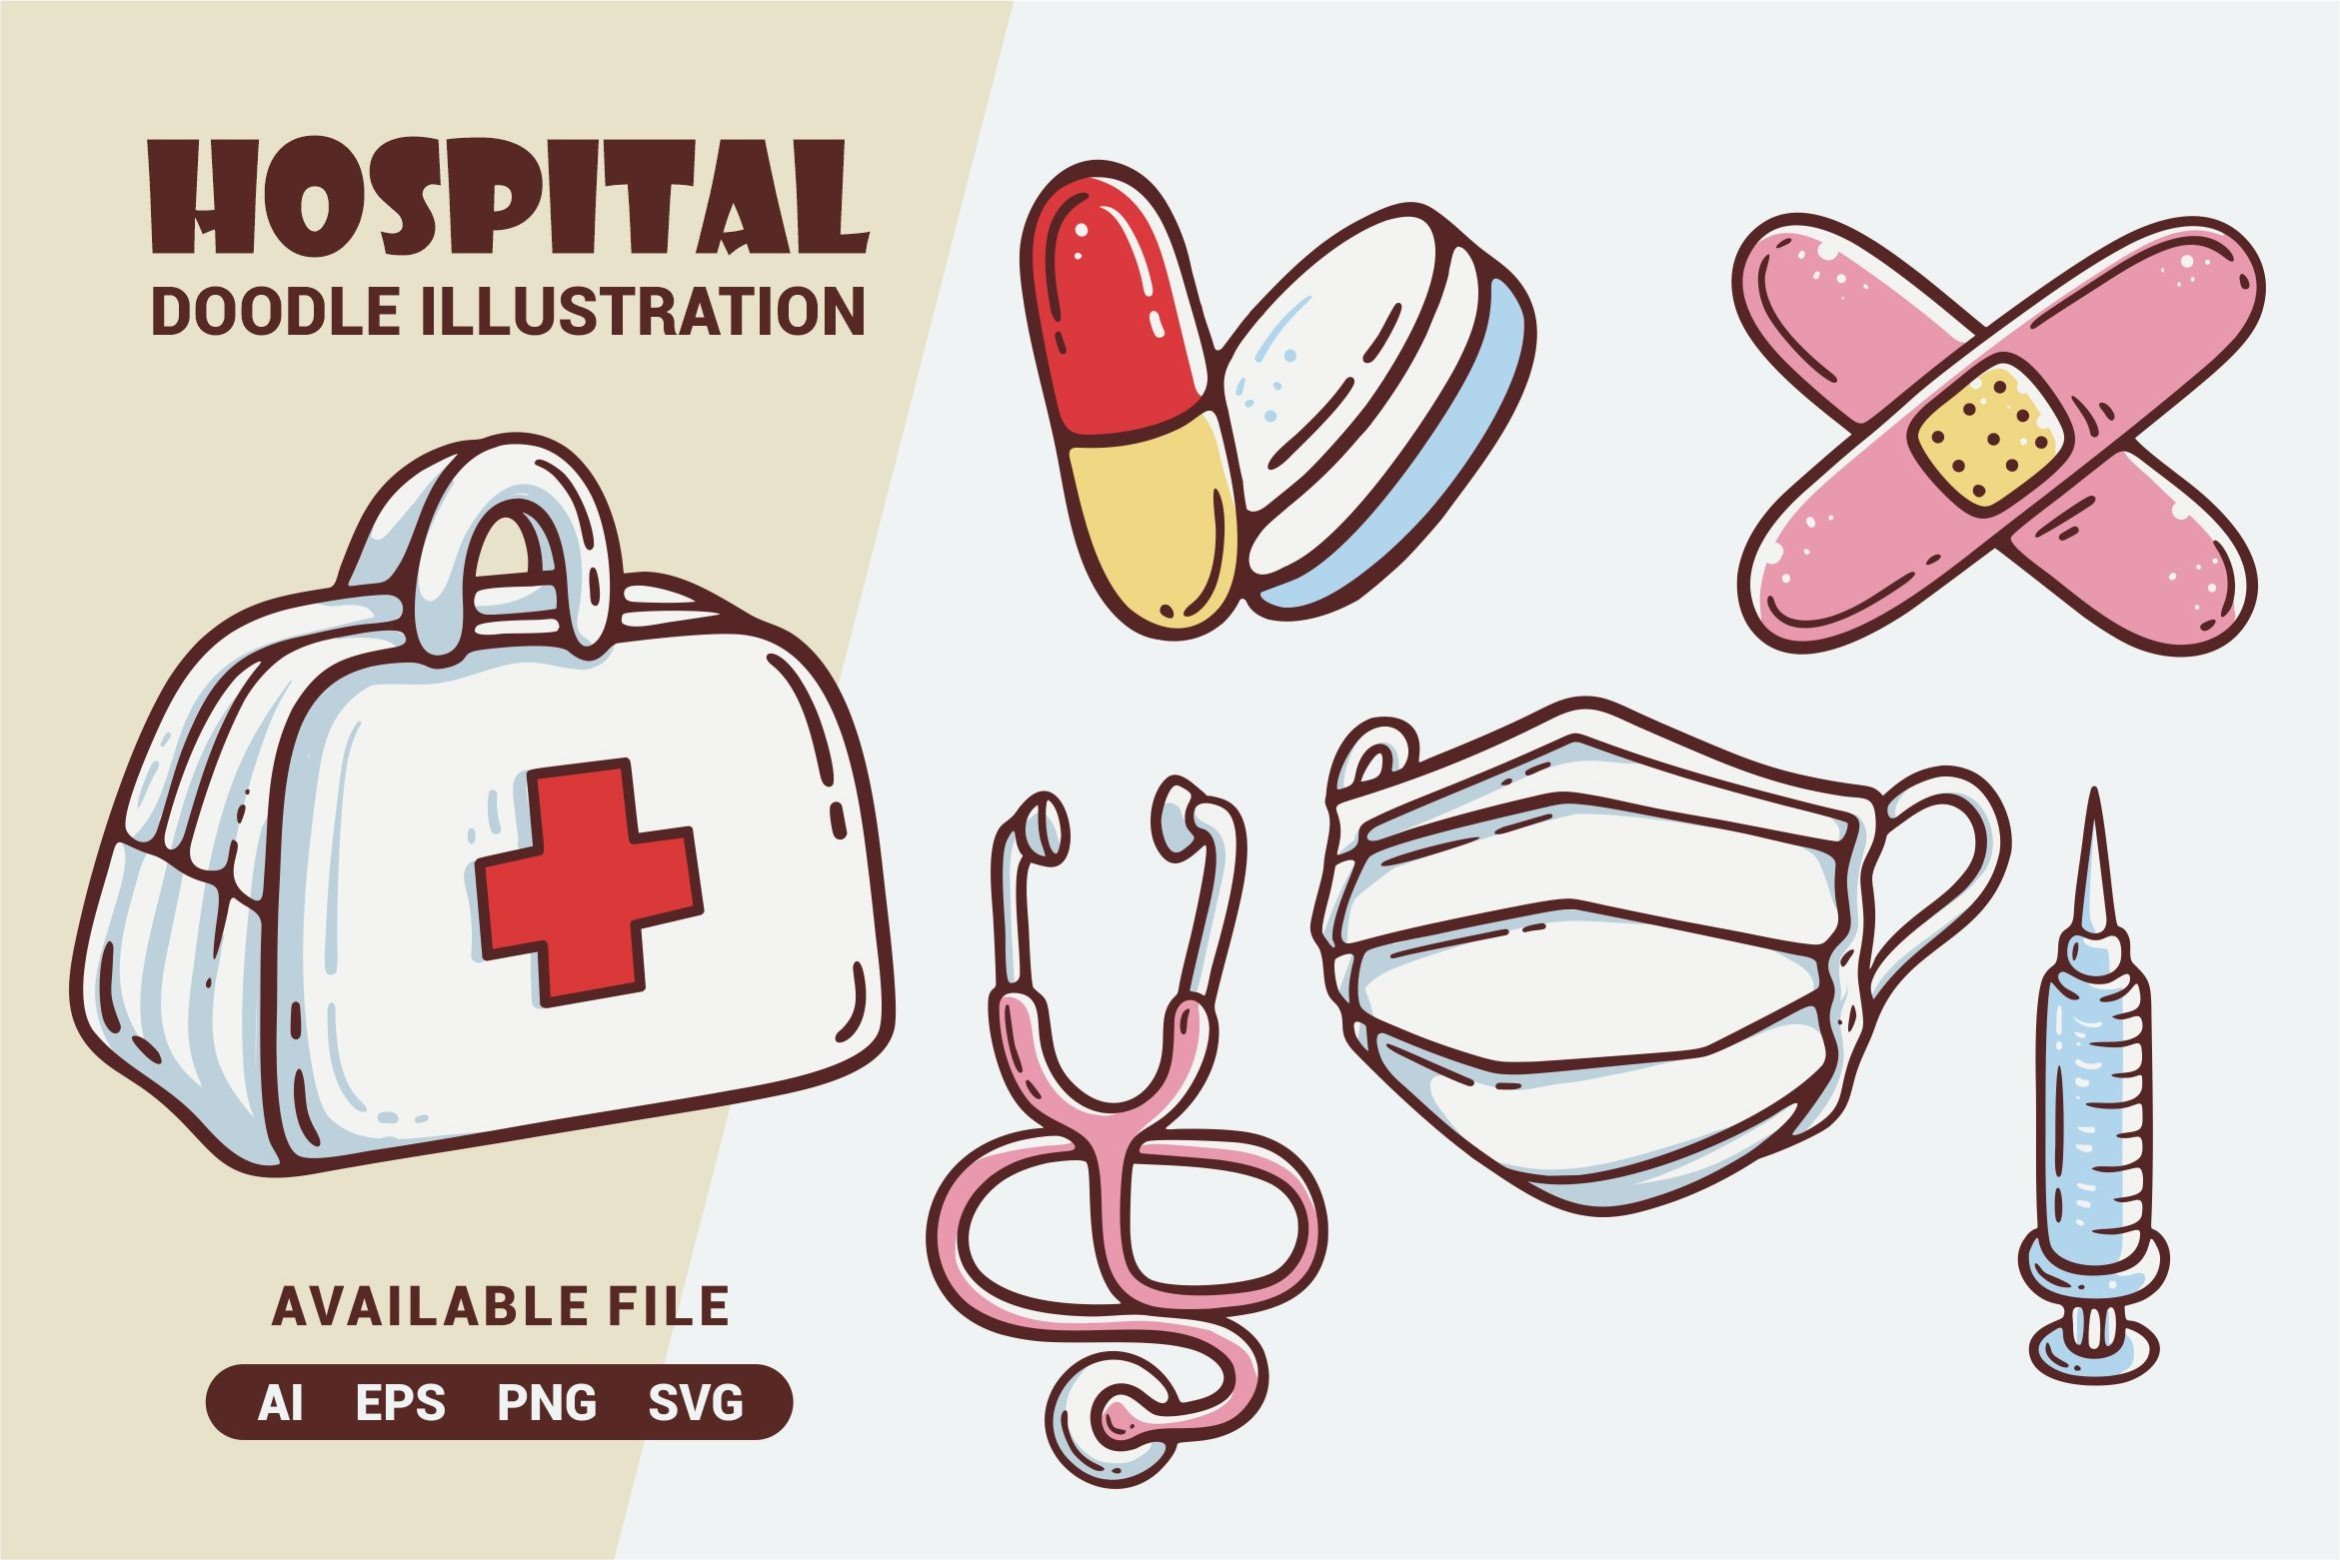 Hospital Doodle Illustration cover image.